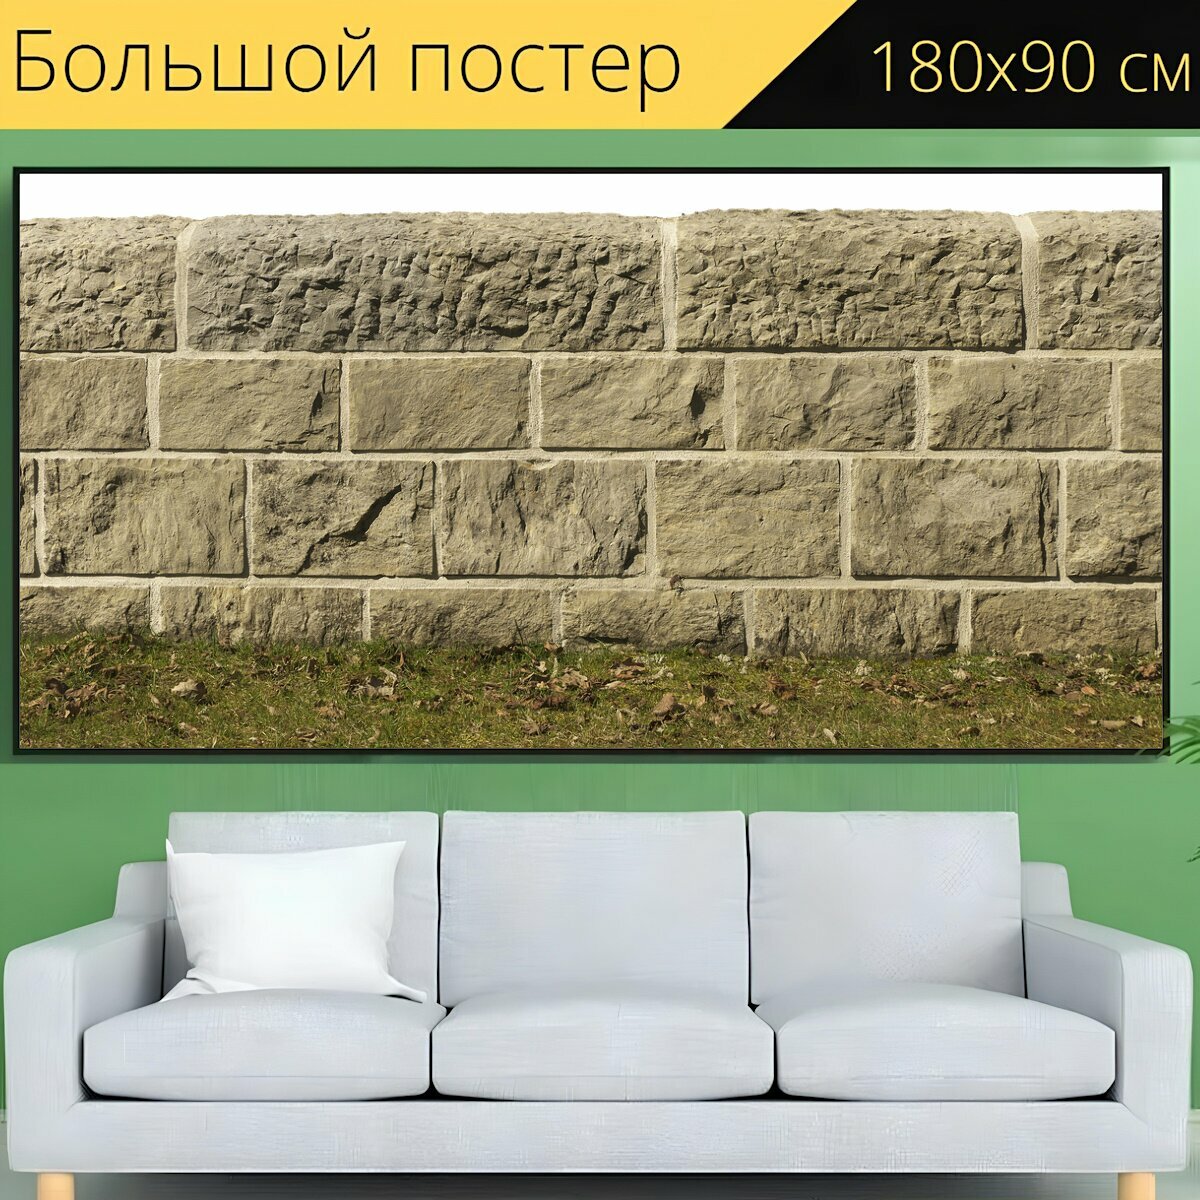 Большой постер "Потока стены, защита от флуда, каменная стена" 180 x 90 см. для интерьера